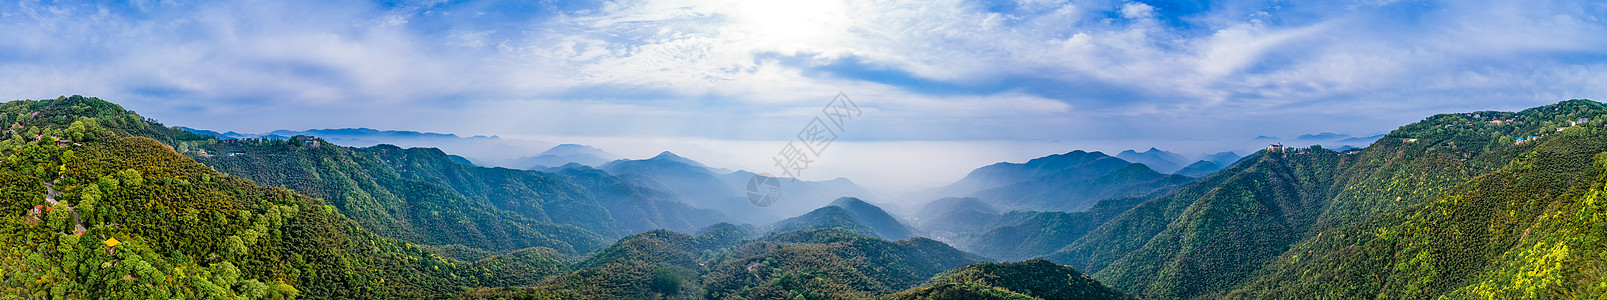 莫干山顶峰全景自然风景高清图片